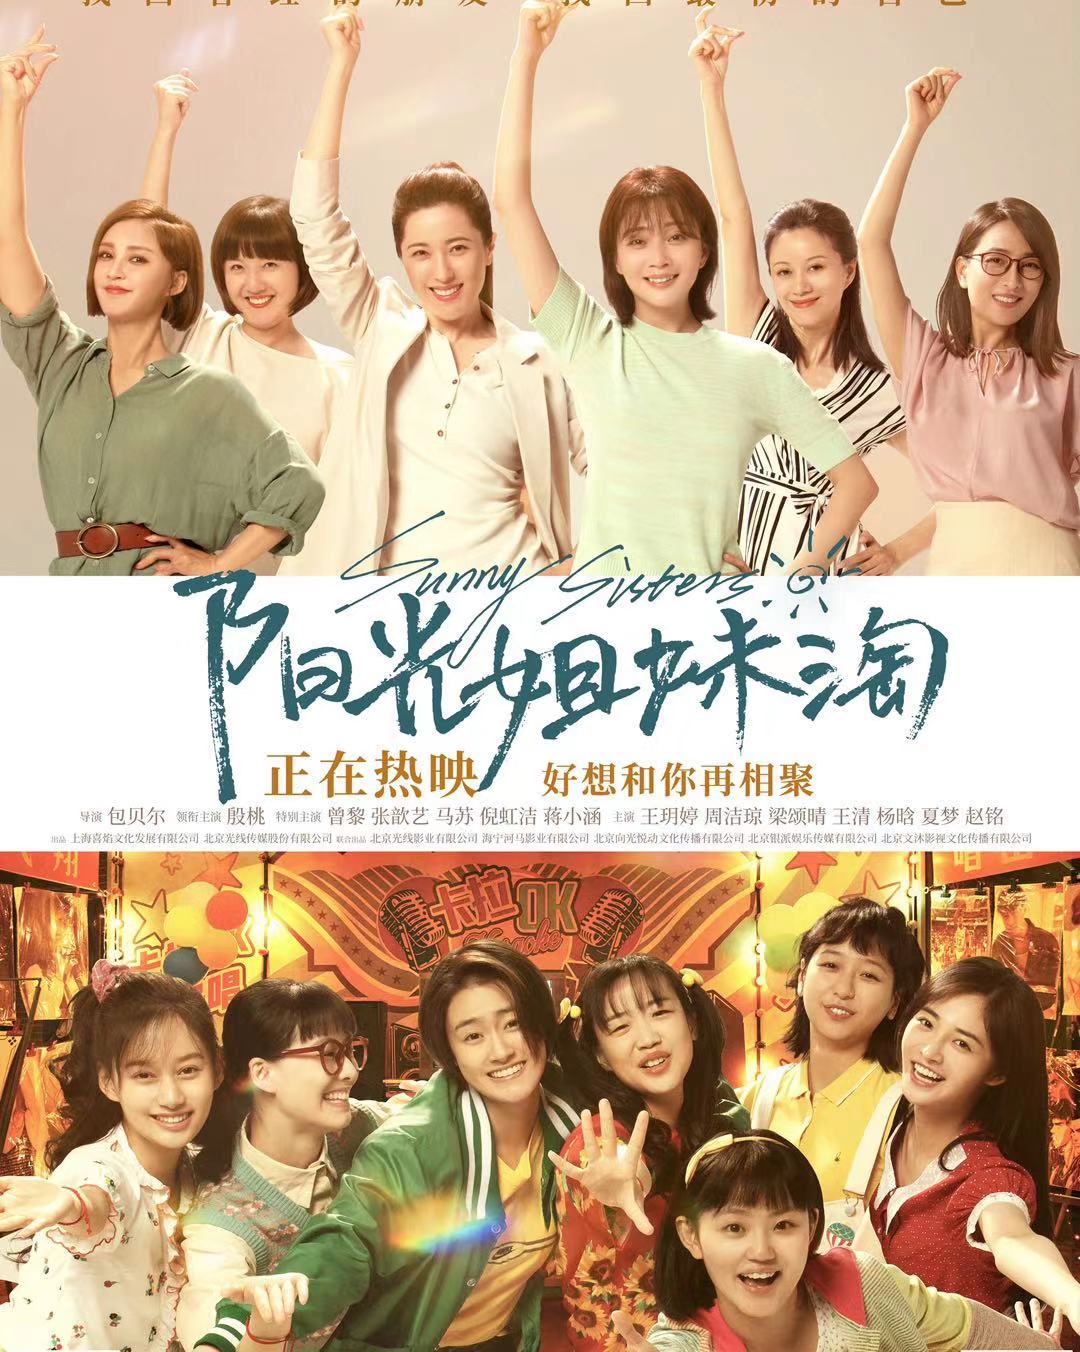 张歆艺电影《阳光姐妹淘》0611正式上映,穿越人海姐妹